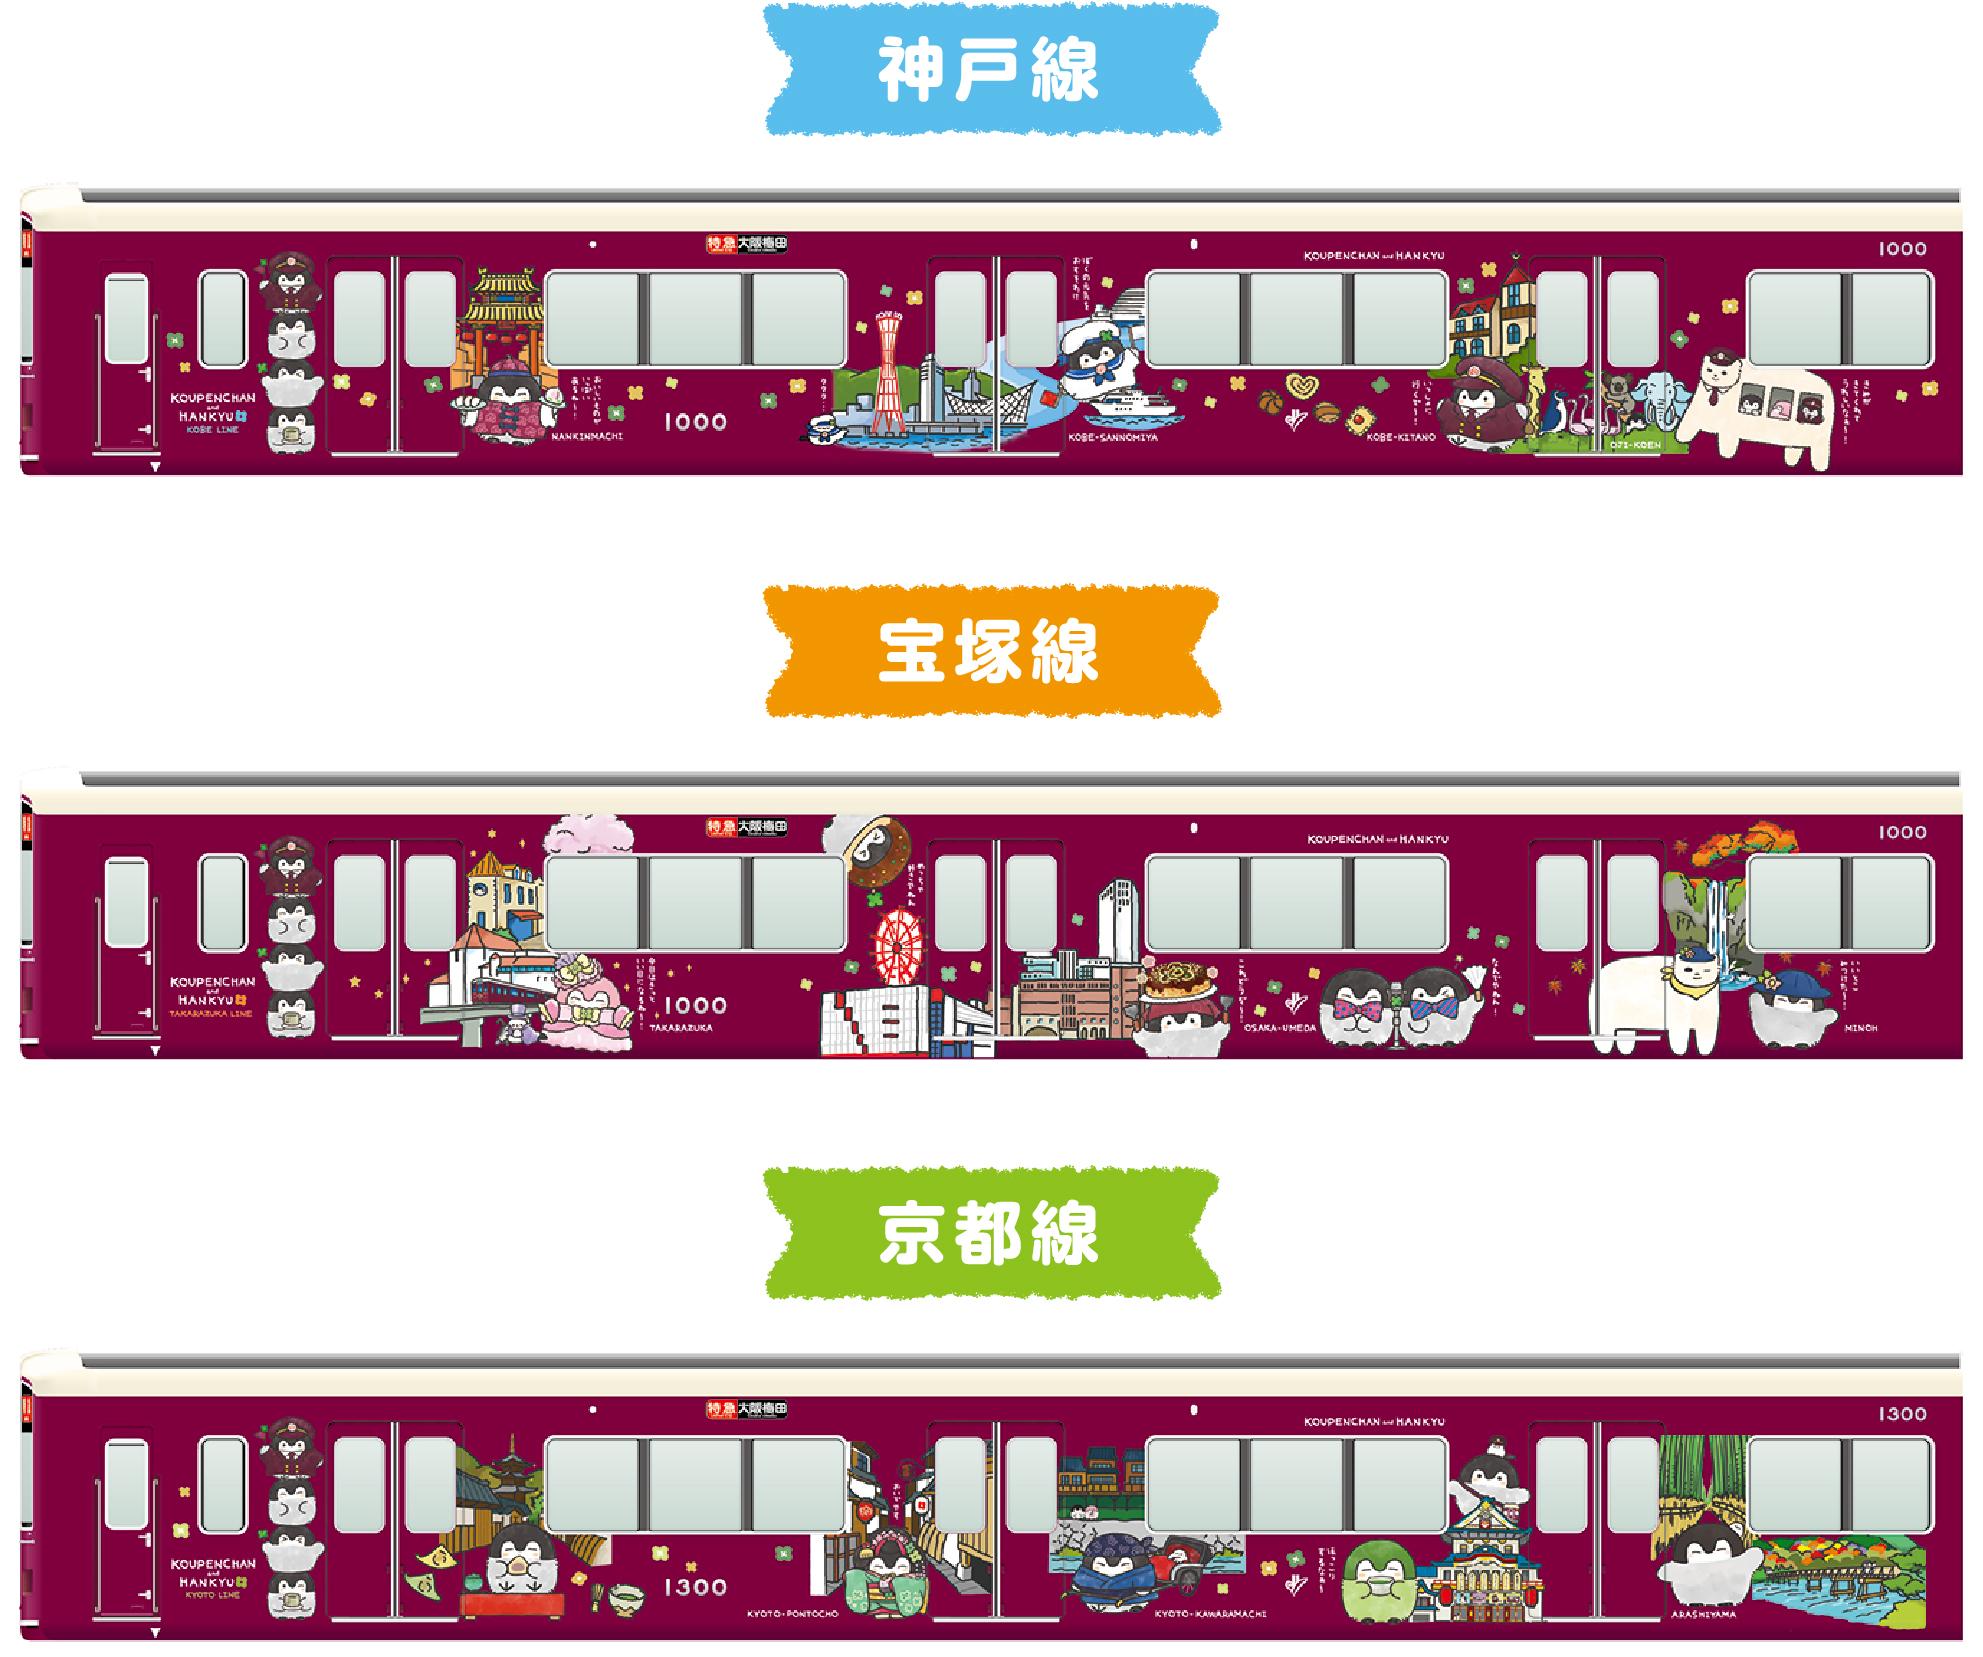 阪急電鉄とコウペンちゃんのコラボレーションが決定 7 14 水 コウペンちゃん号 を運行します レールファン阪急 阪急電車 公式鉄道ファンサイト 阪急電鉄